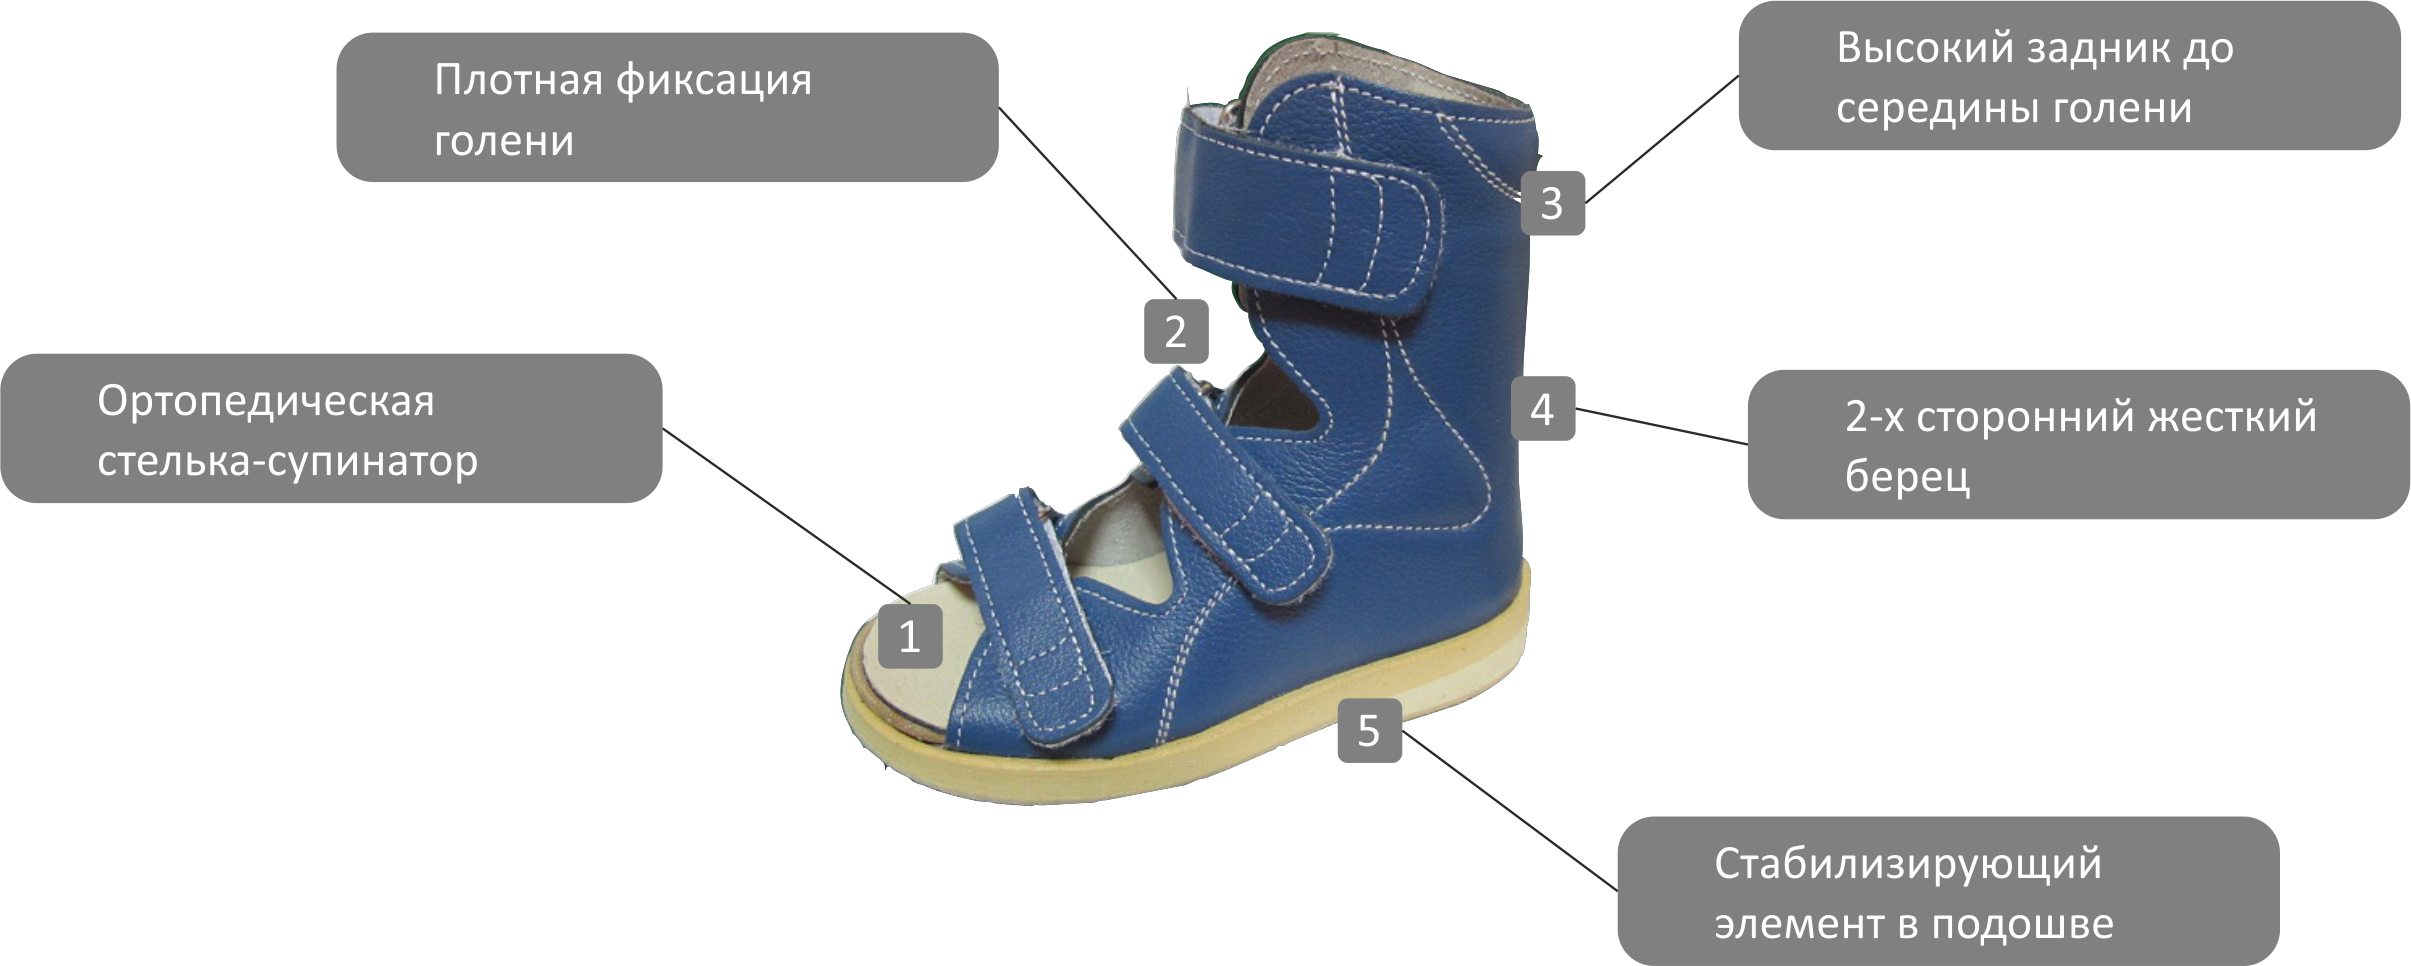 Ортопедическая обувь для детей вальгусная стопа. Ортопедические обувь для врожденной косолапости. Ортопедическая обувь при косолапии у детей. Ботинки для лечения косолапости у детей. Обувь при косолапии у ребенка.